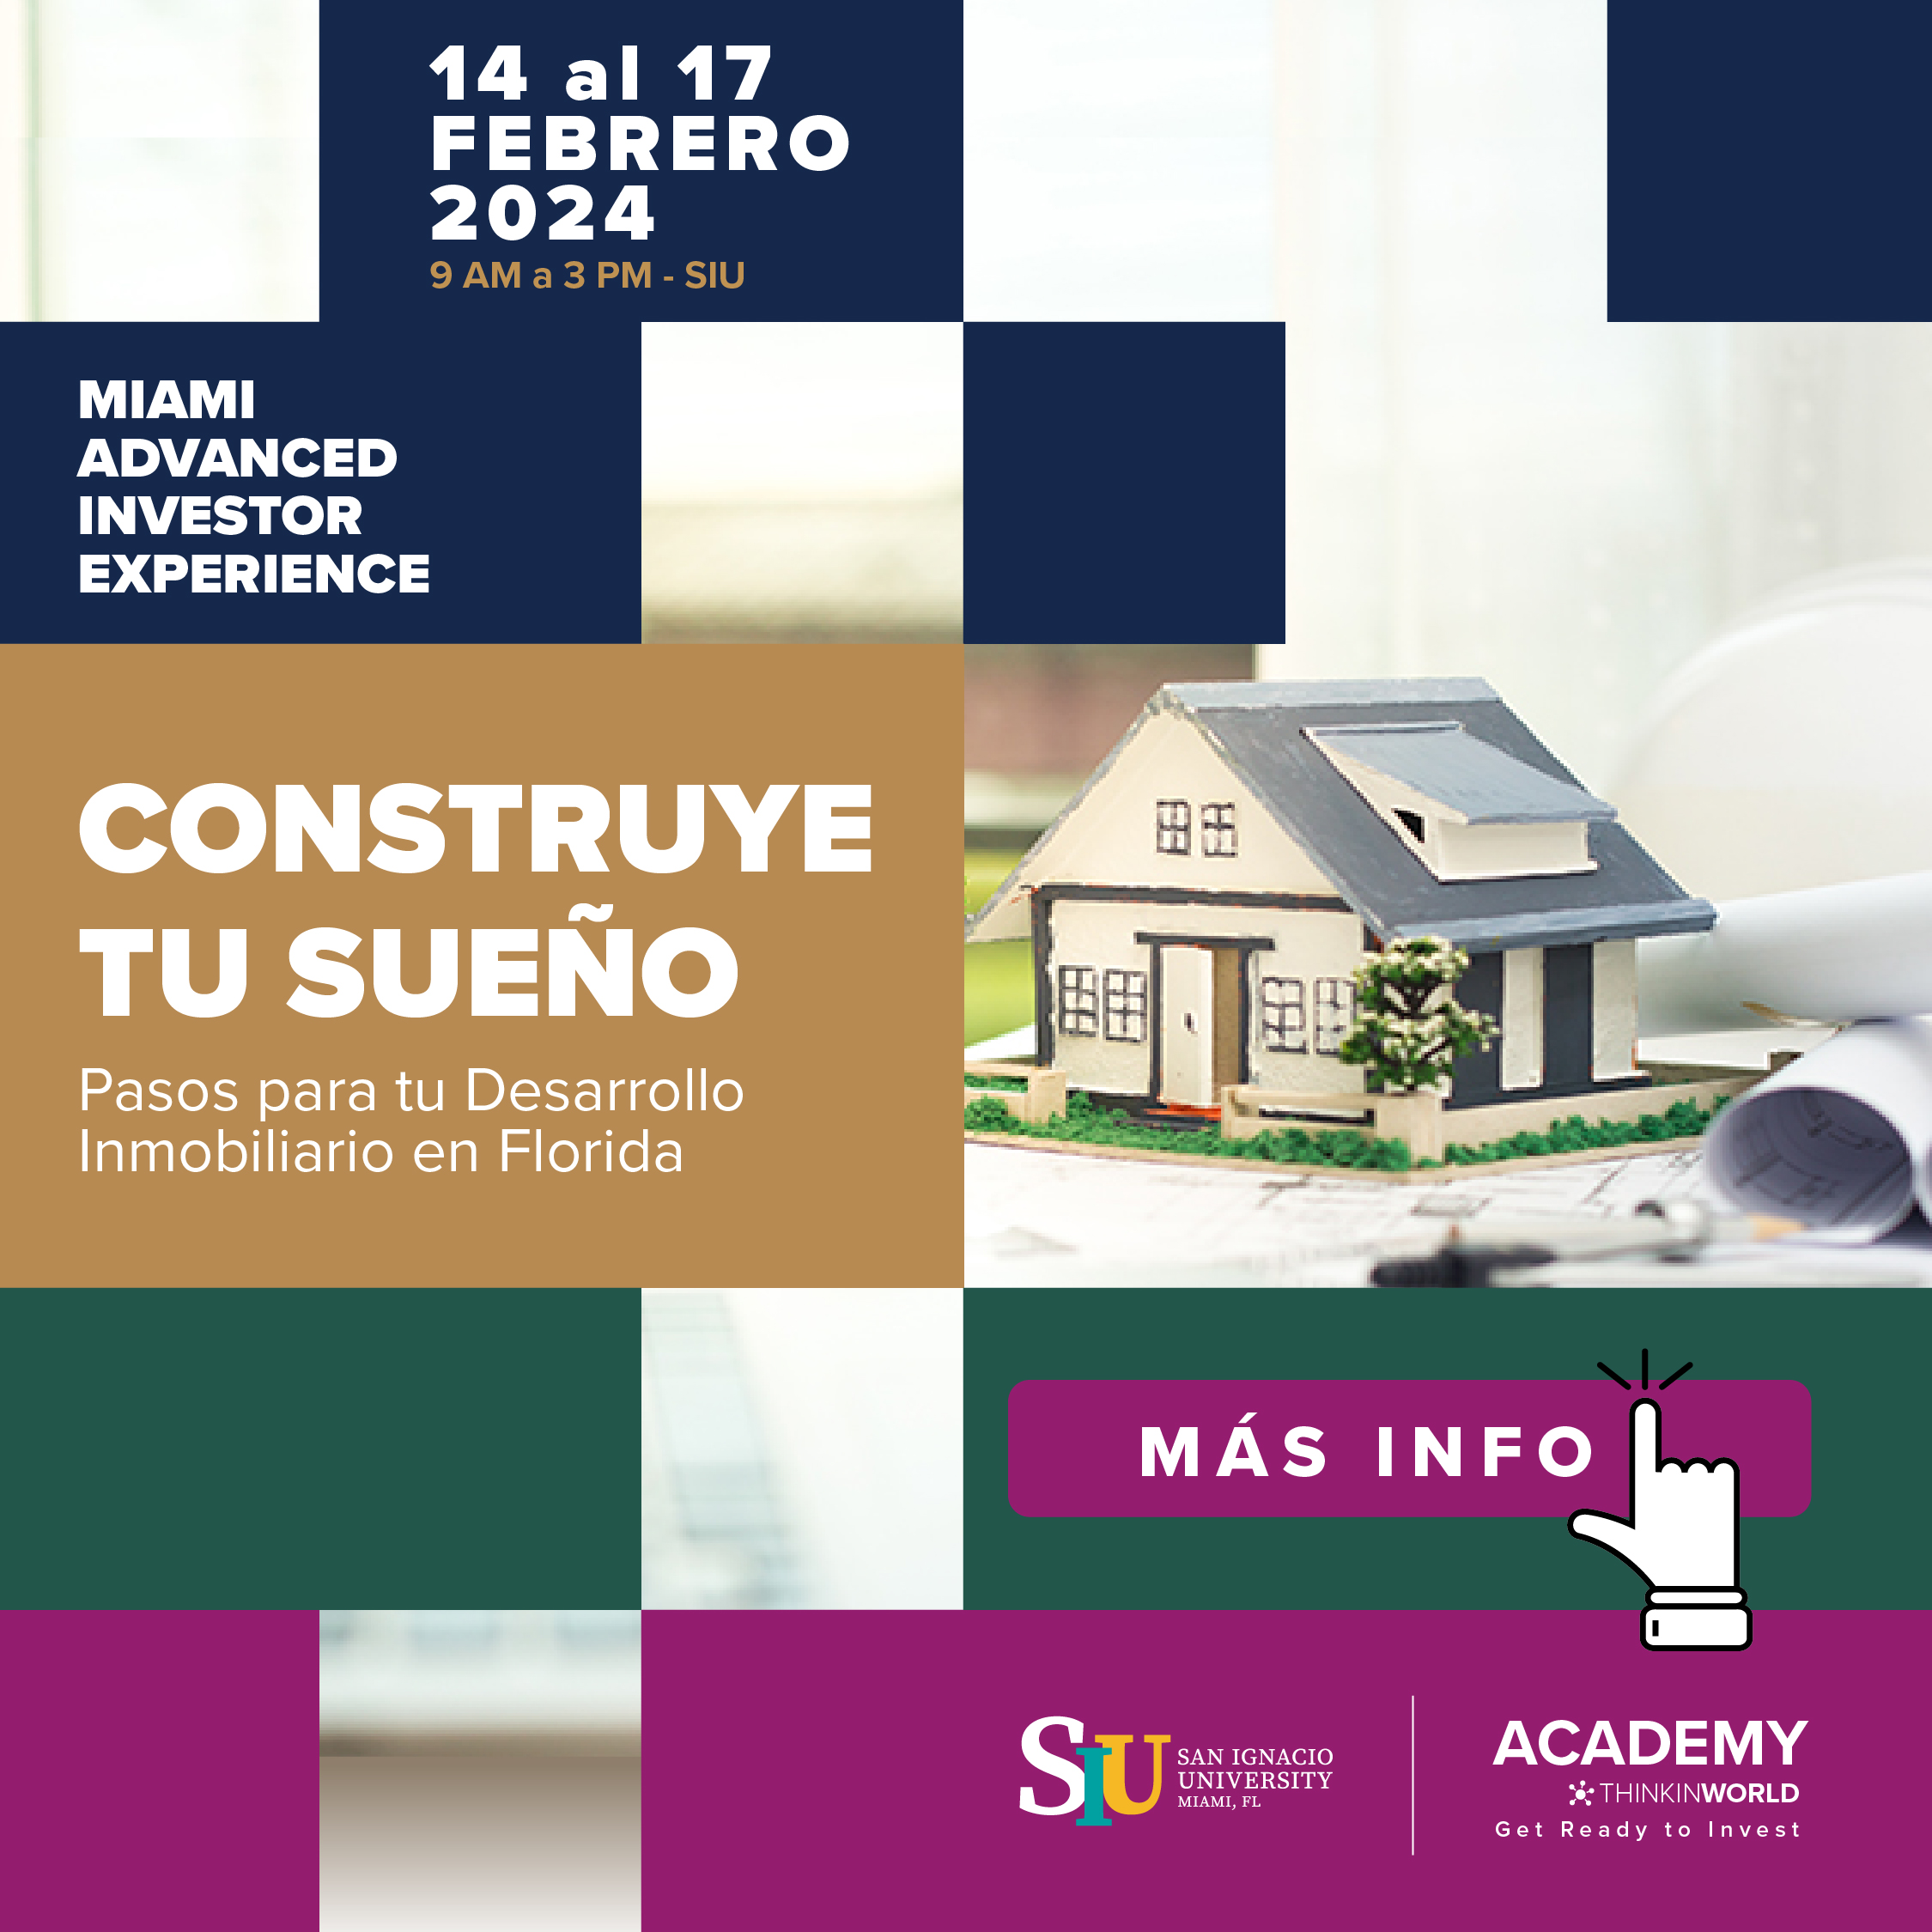 Curso Miami Advanced Investor Experience - Febrero 2024